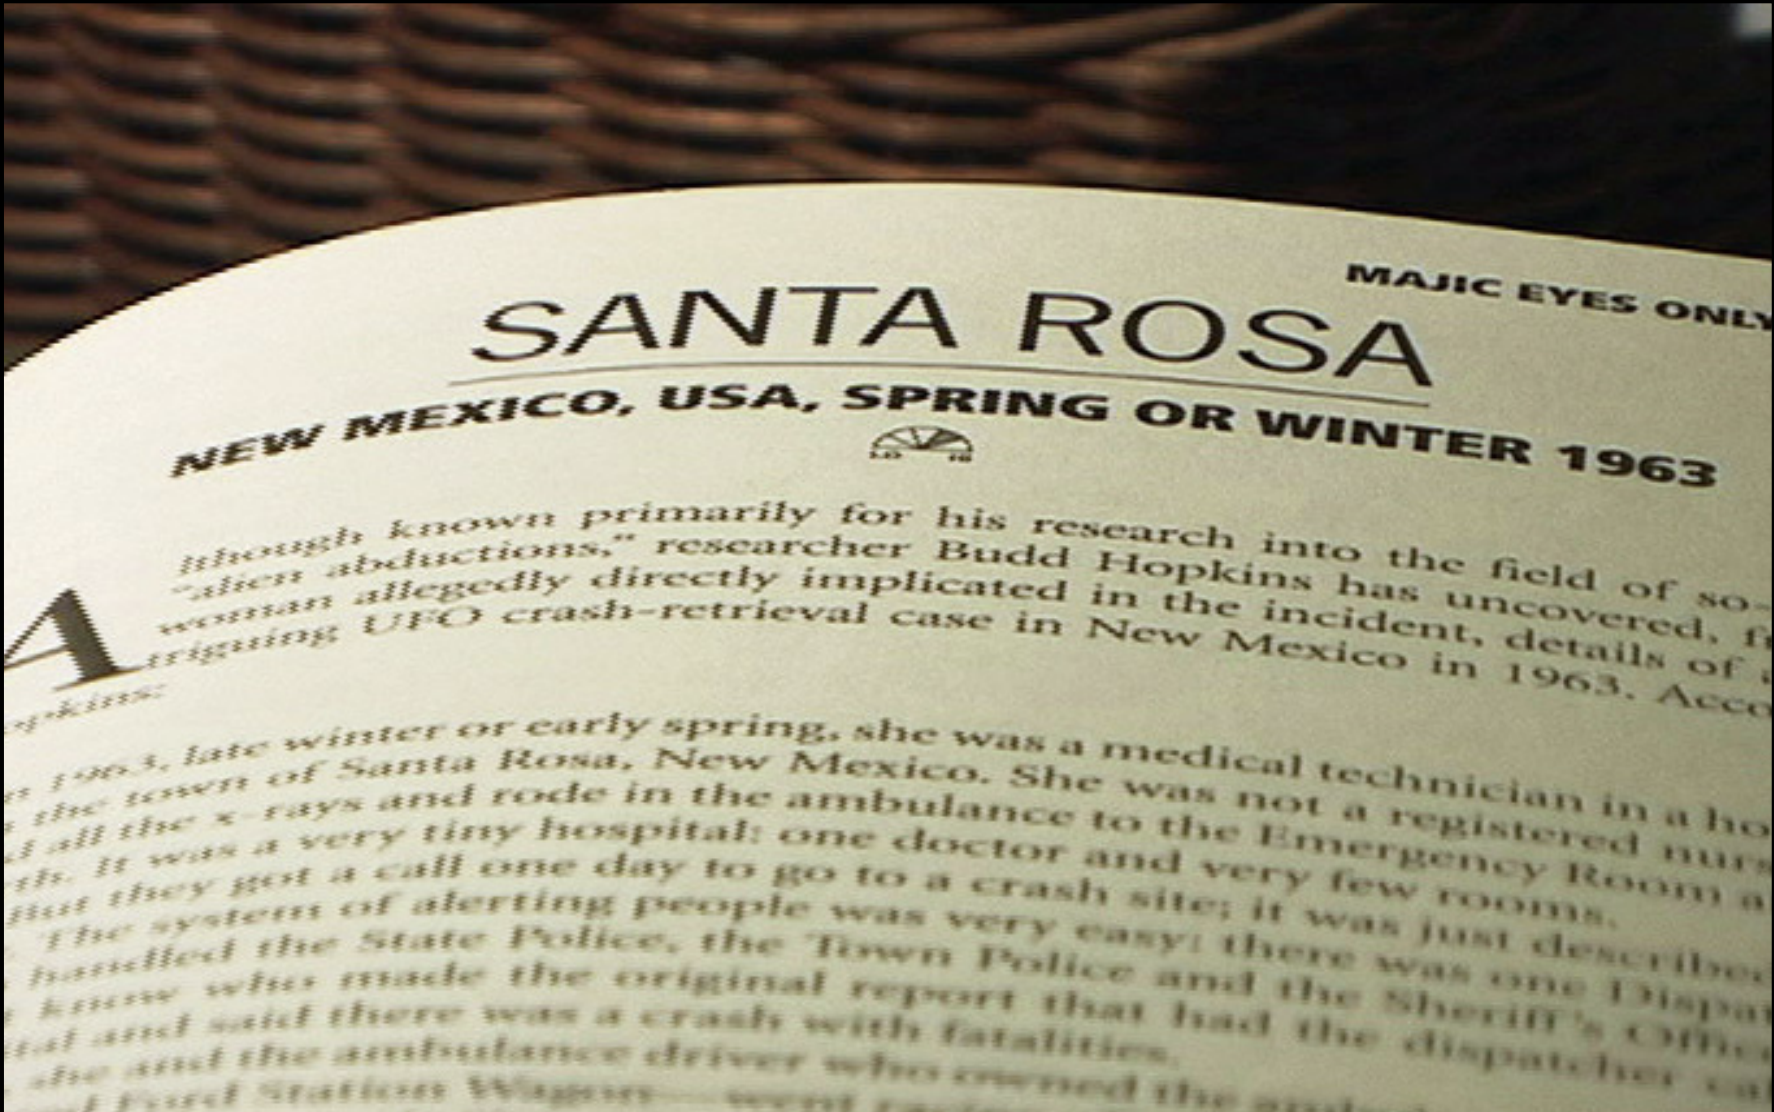 La relation non vérifiée par Hopkins des déclarations de Beanie a gagné son propre chapitre, "Santa Rosa" dans Majic Eyes Only, un livre couvrant "74 cas de soucoupes écrasées étayés par des preuves convaincantes "    s5Rainey, C: image de documentaire